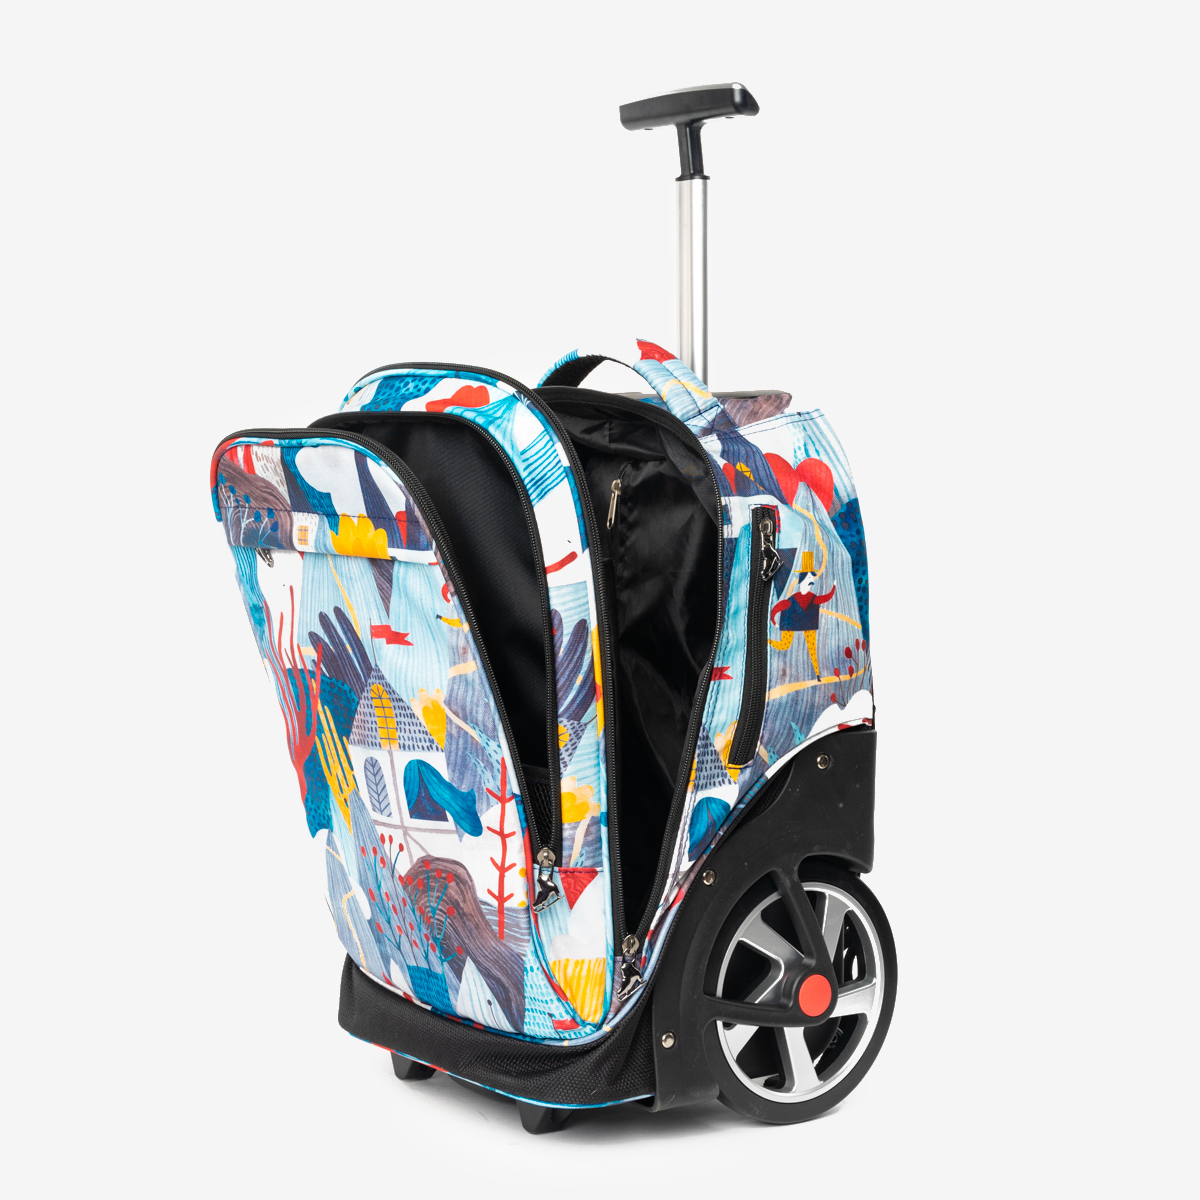 Колеса cube. Рюкзак на колесах Cube. Cube сумки с колесиками. Сумка Cube для фигуристов на колесиках. Сумка-рюкзак на колесиках «Cube» Landscape.